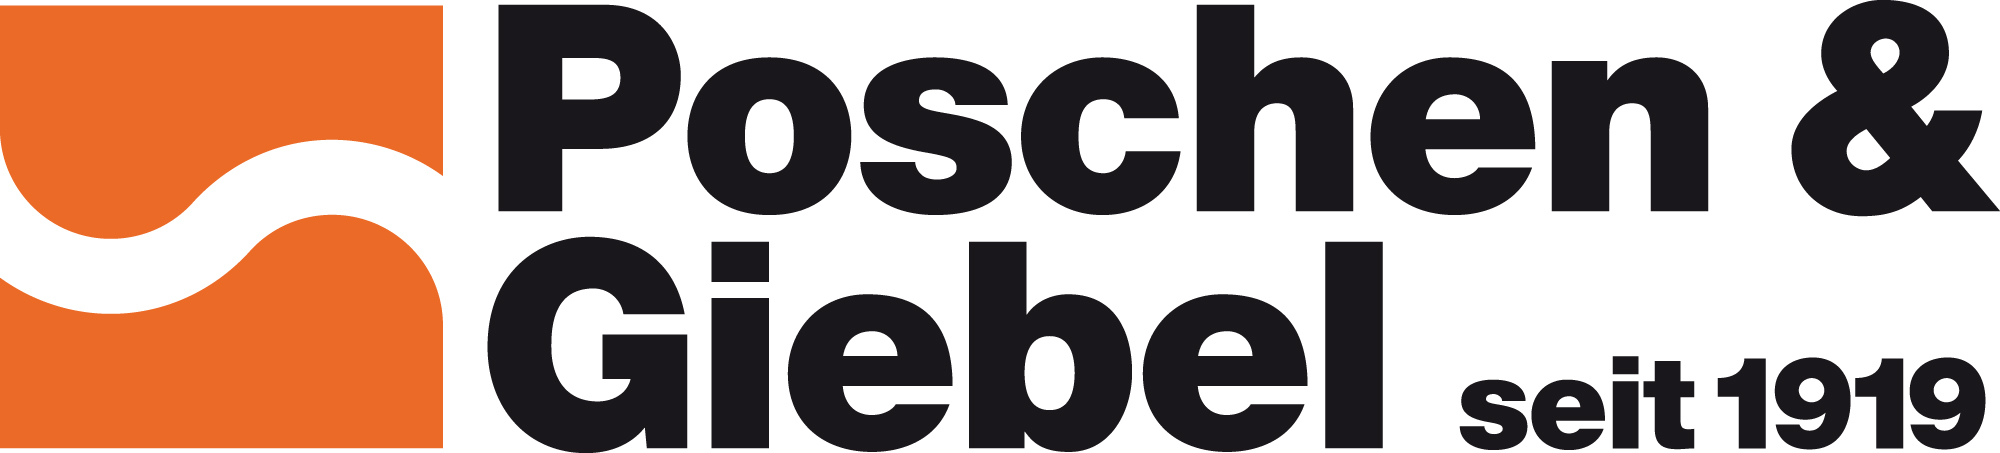 Poschen & Giebel GmbH